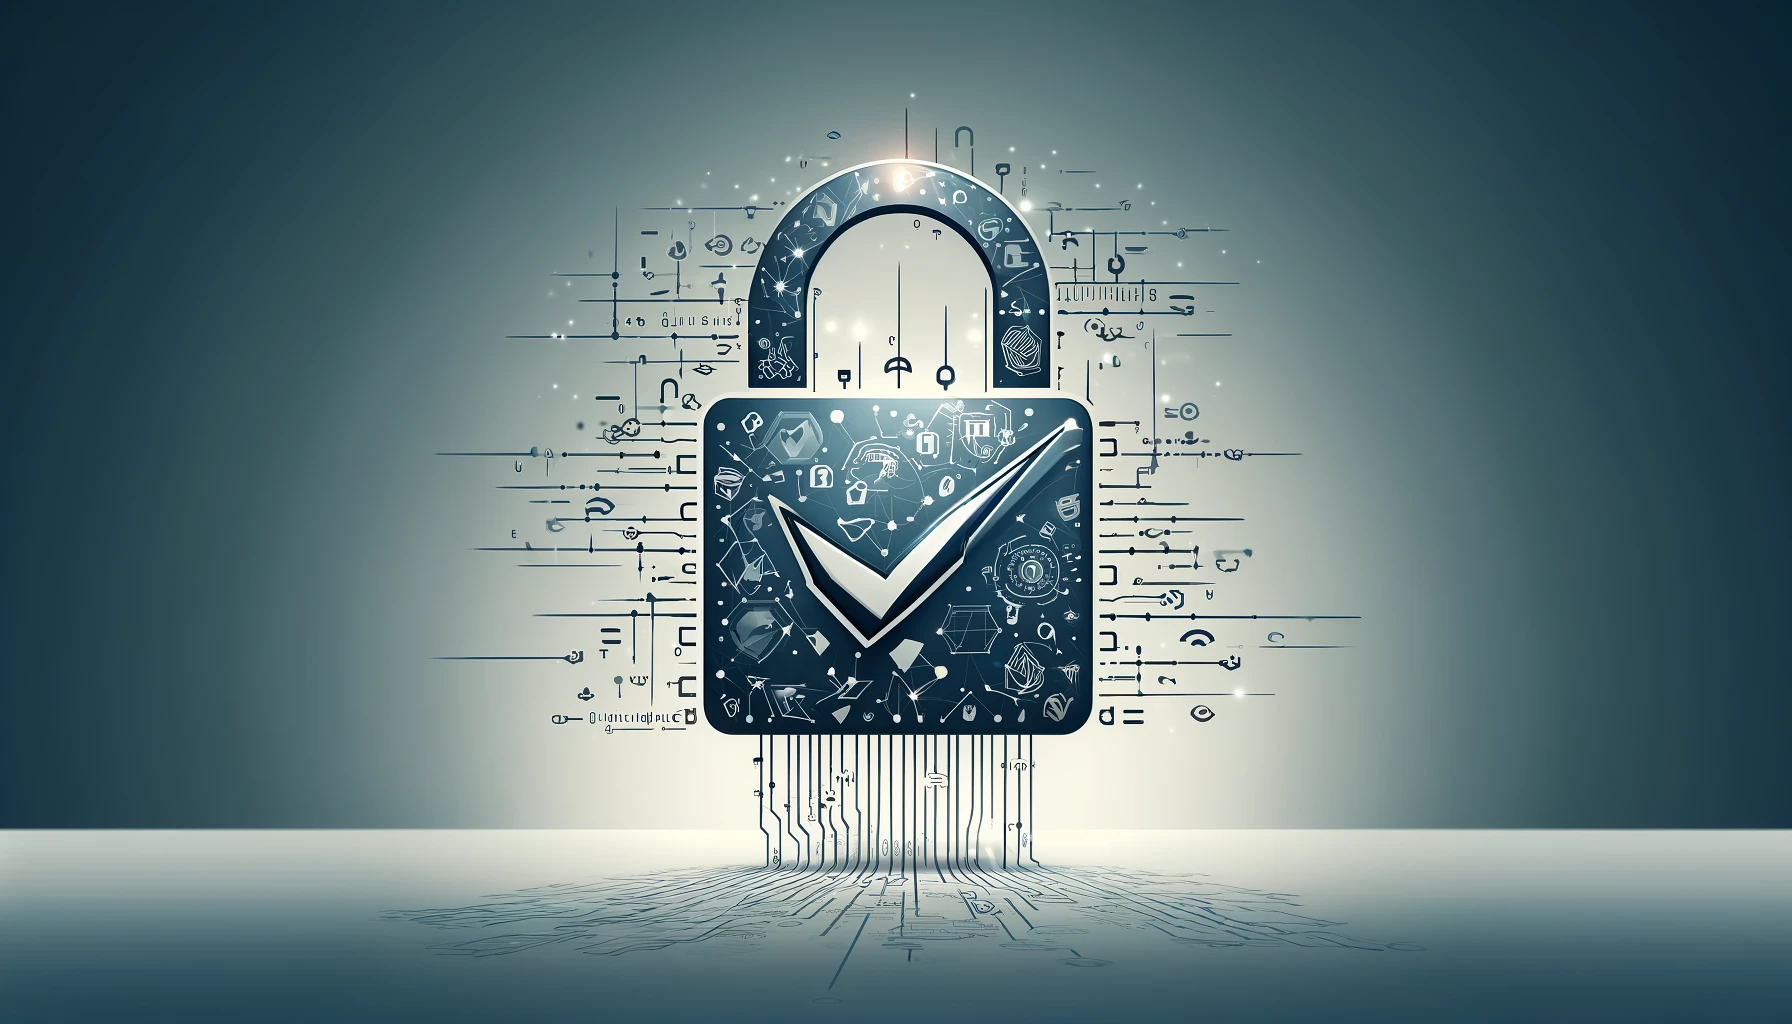 デジタル署名のセキュリティと技術を象徴するグレー背景の画像